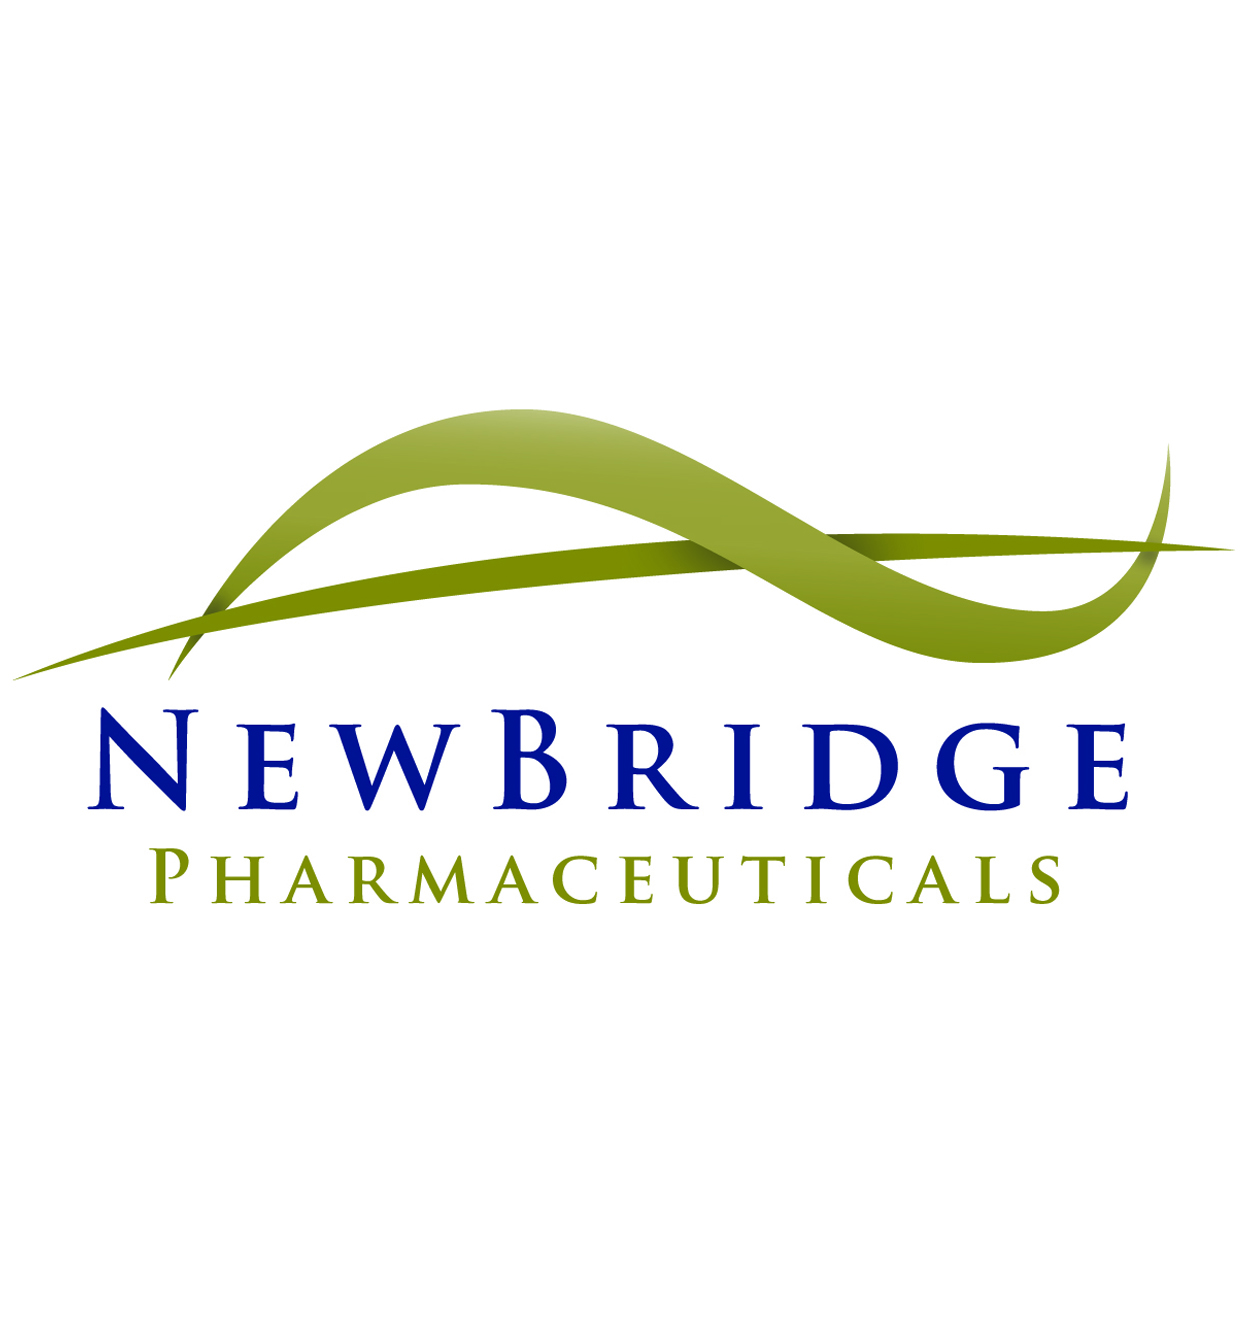 Newbridge Pharmaceuticals